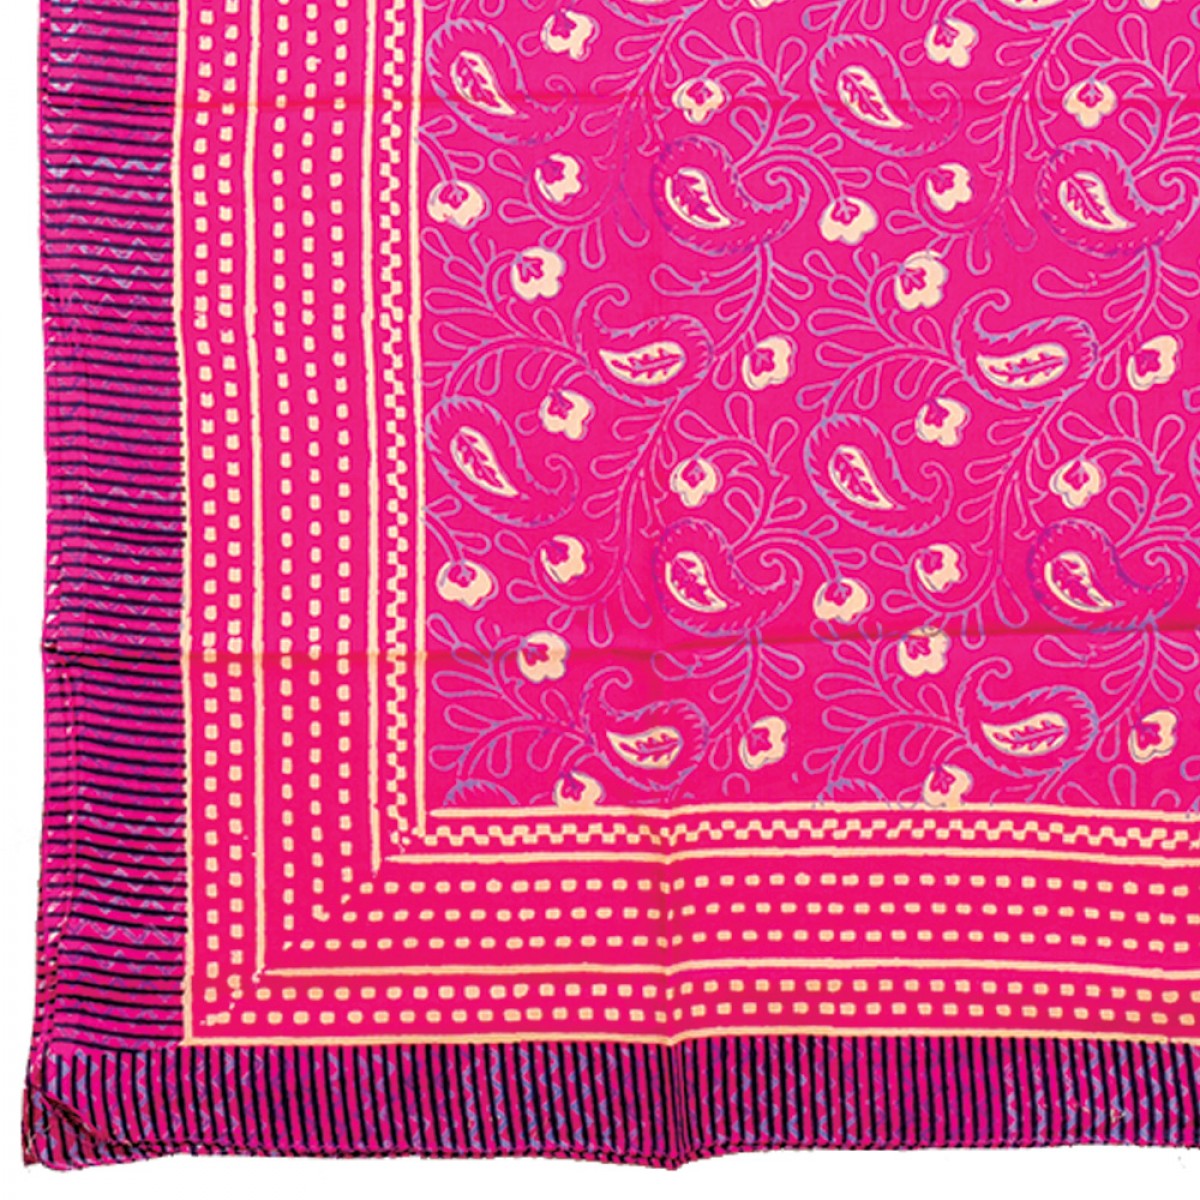 Hand Block Printed Sarongs - Hot Pink